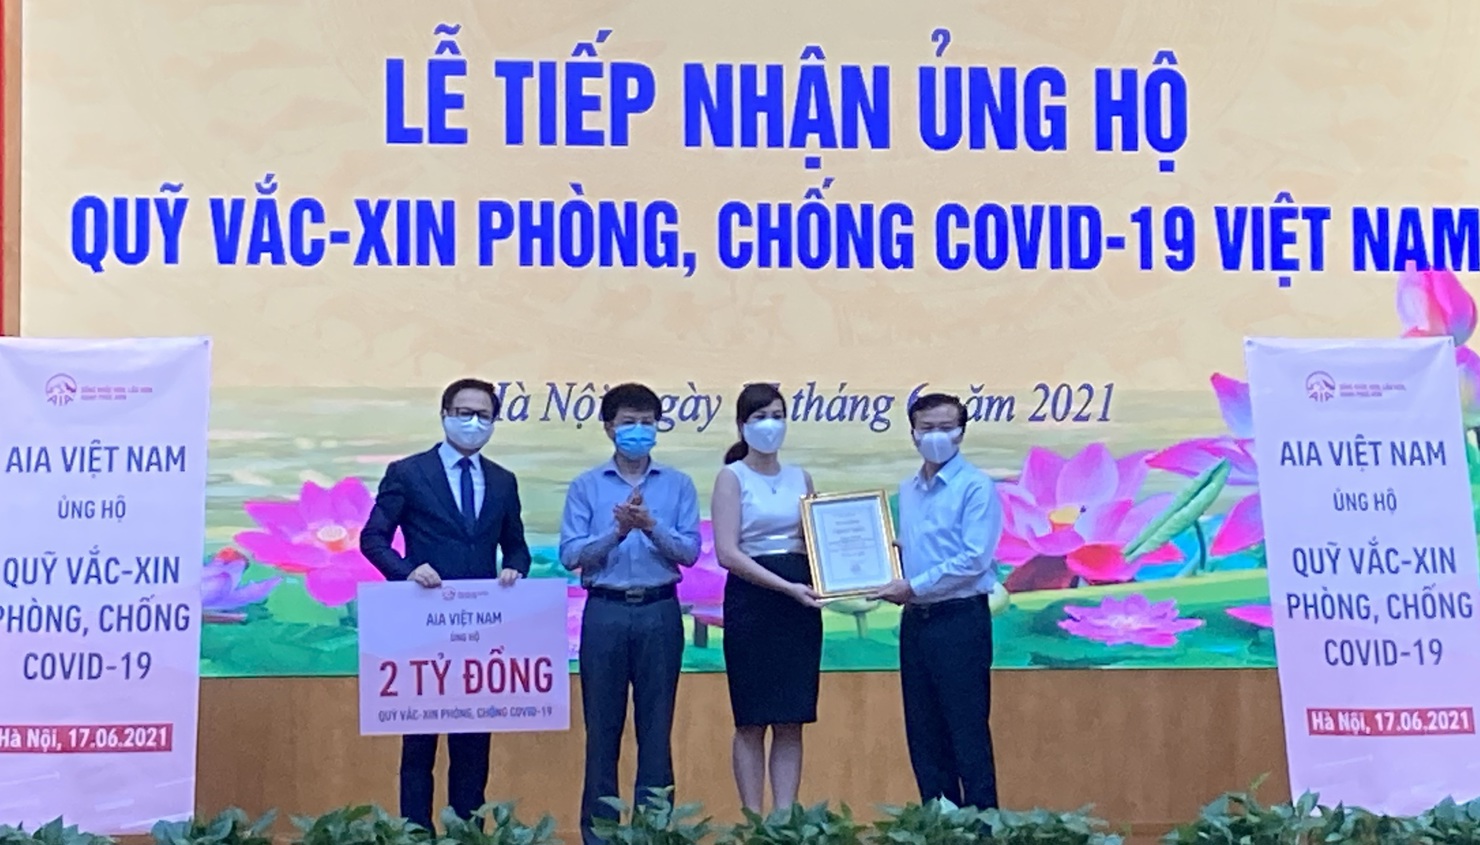 Đại diện Công ty TNHH Bảo hiểm Nhân thọ AIA Việt Nam ủng hộ Quỹ Vắc xin phòng, chống Covid-19.